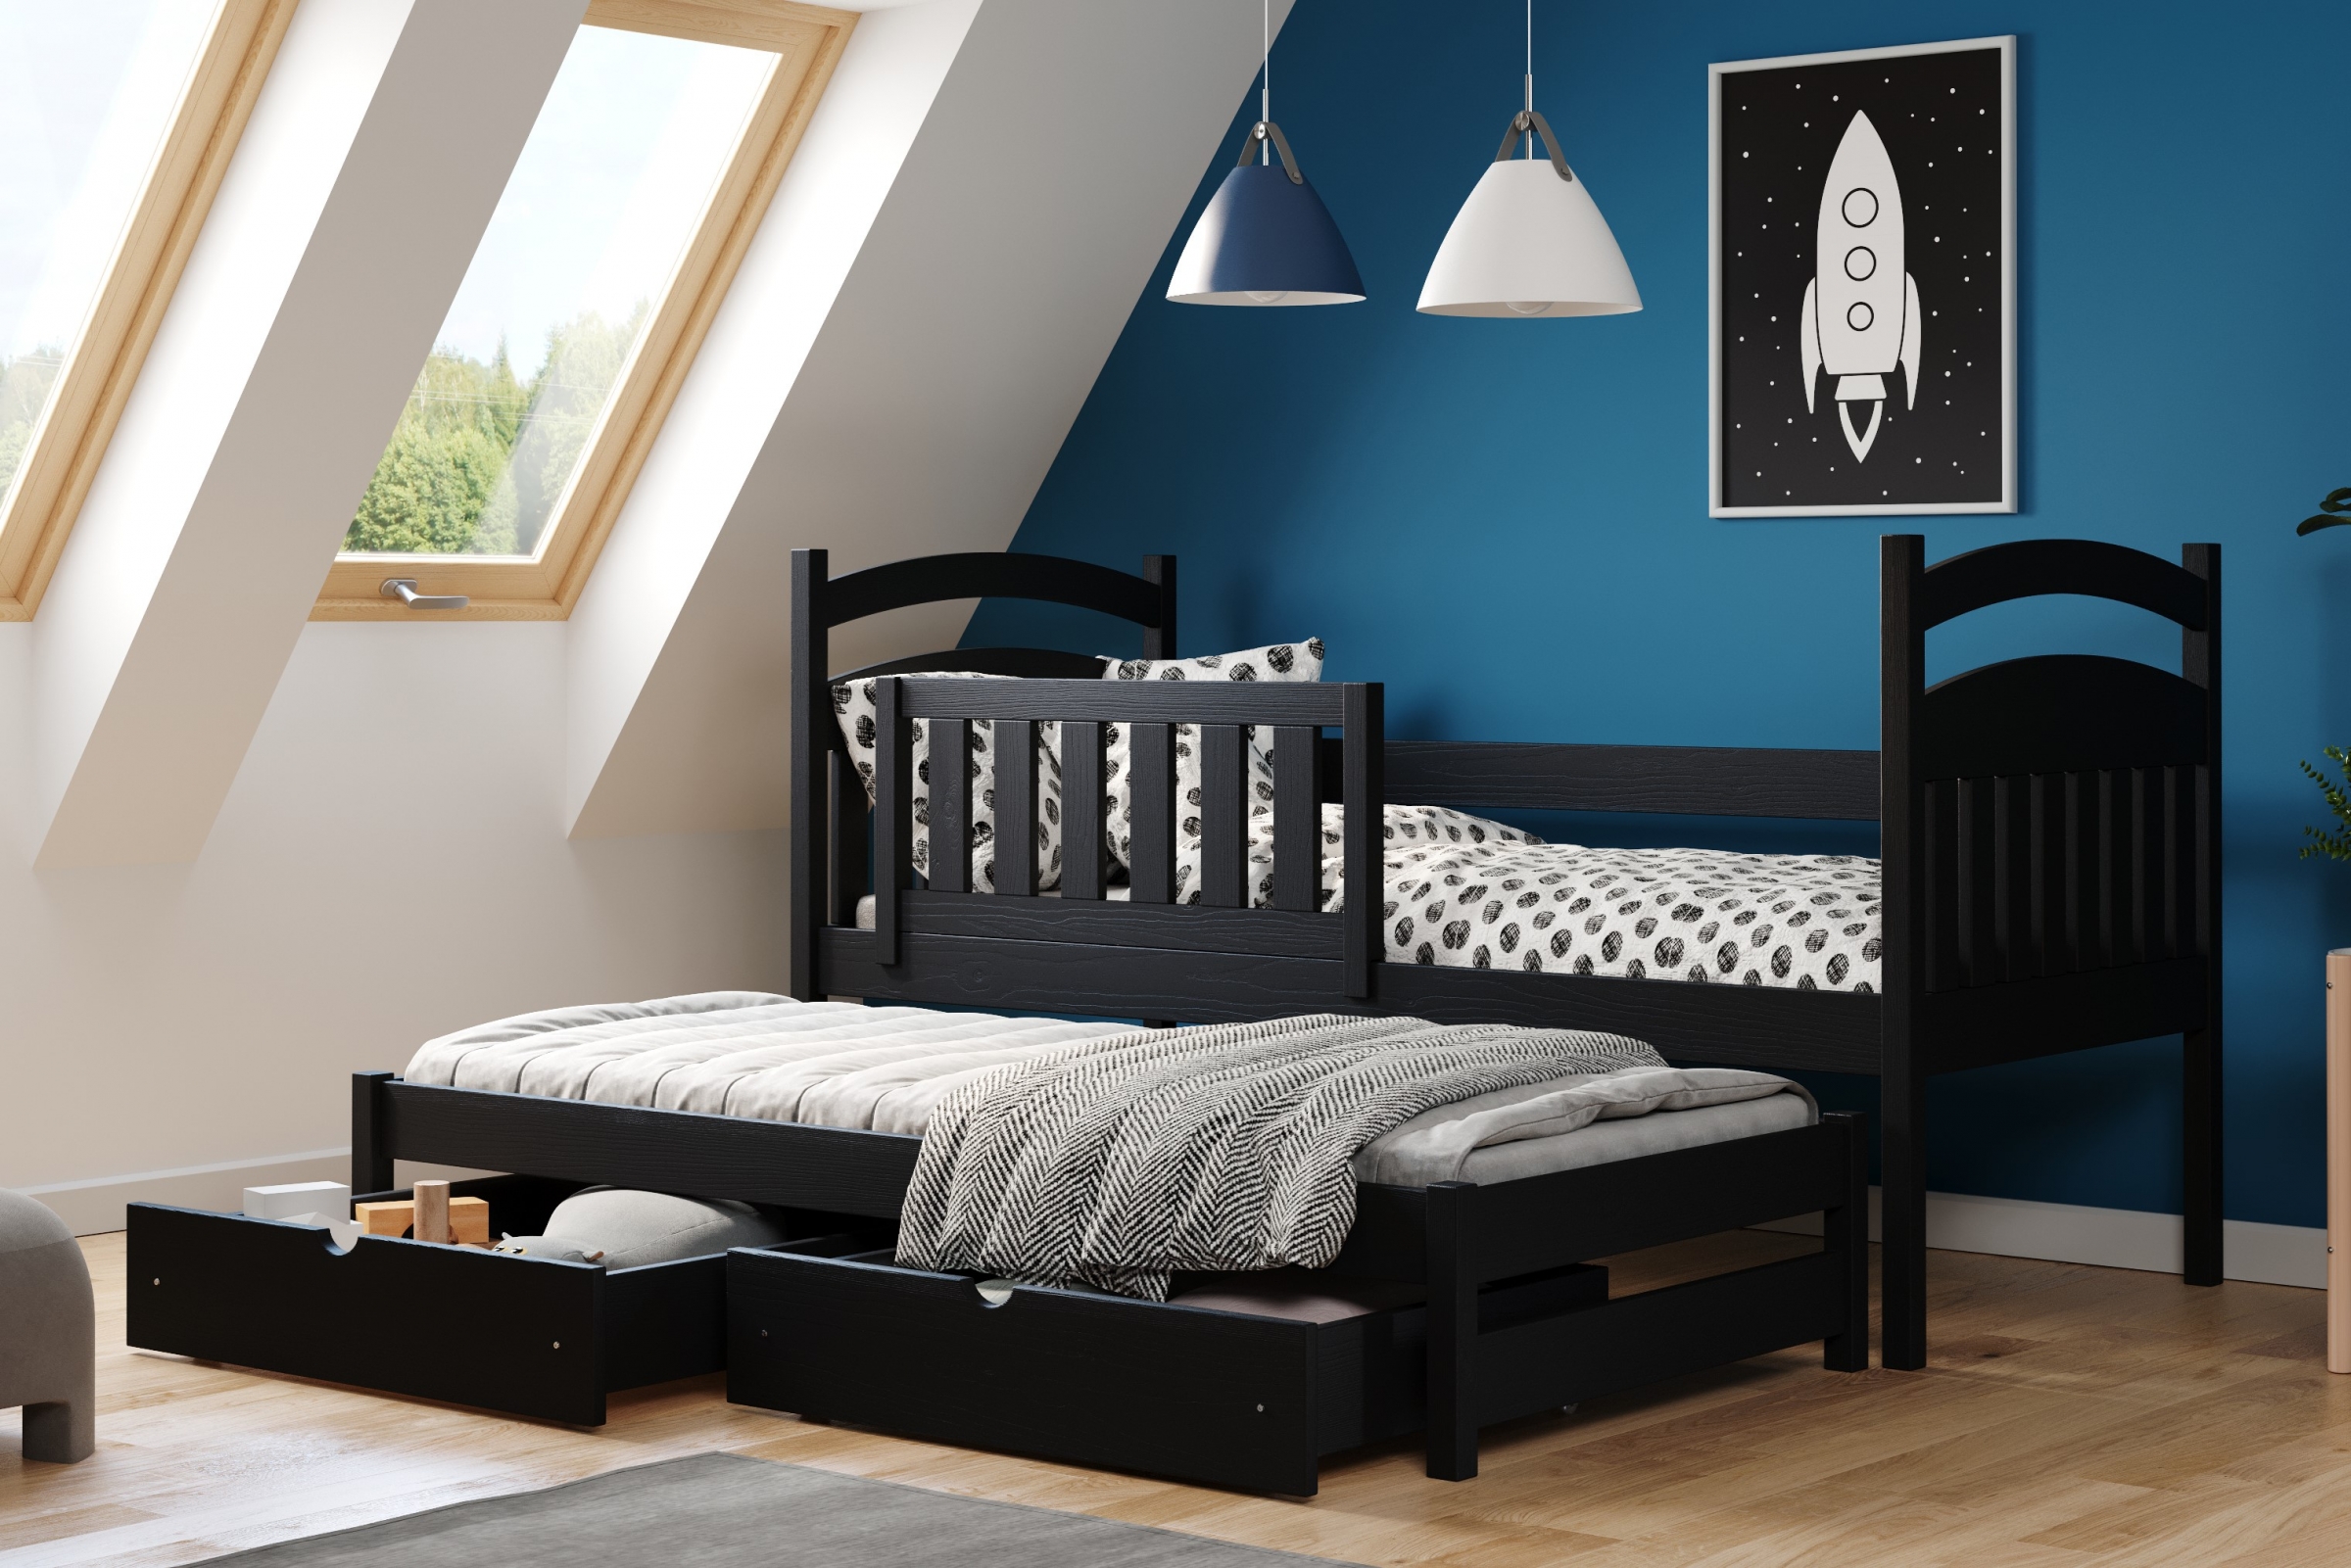 Łóżko dziecięce parterowe wysuwane Amely - czarny, 90x200 Łóżko dziecięce parterowe wyjazdowe Amely - kolor czarny - aranżacja